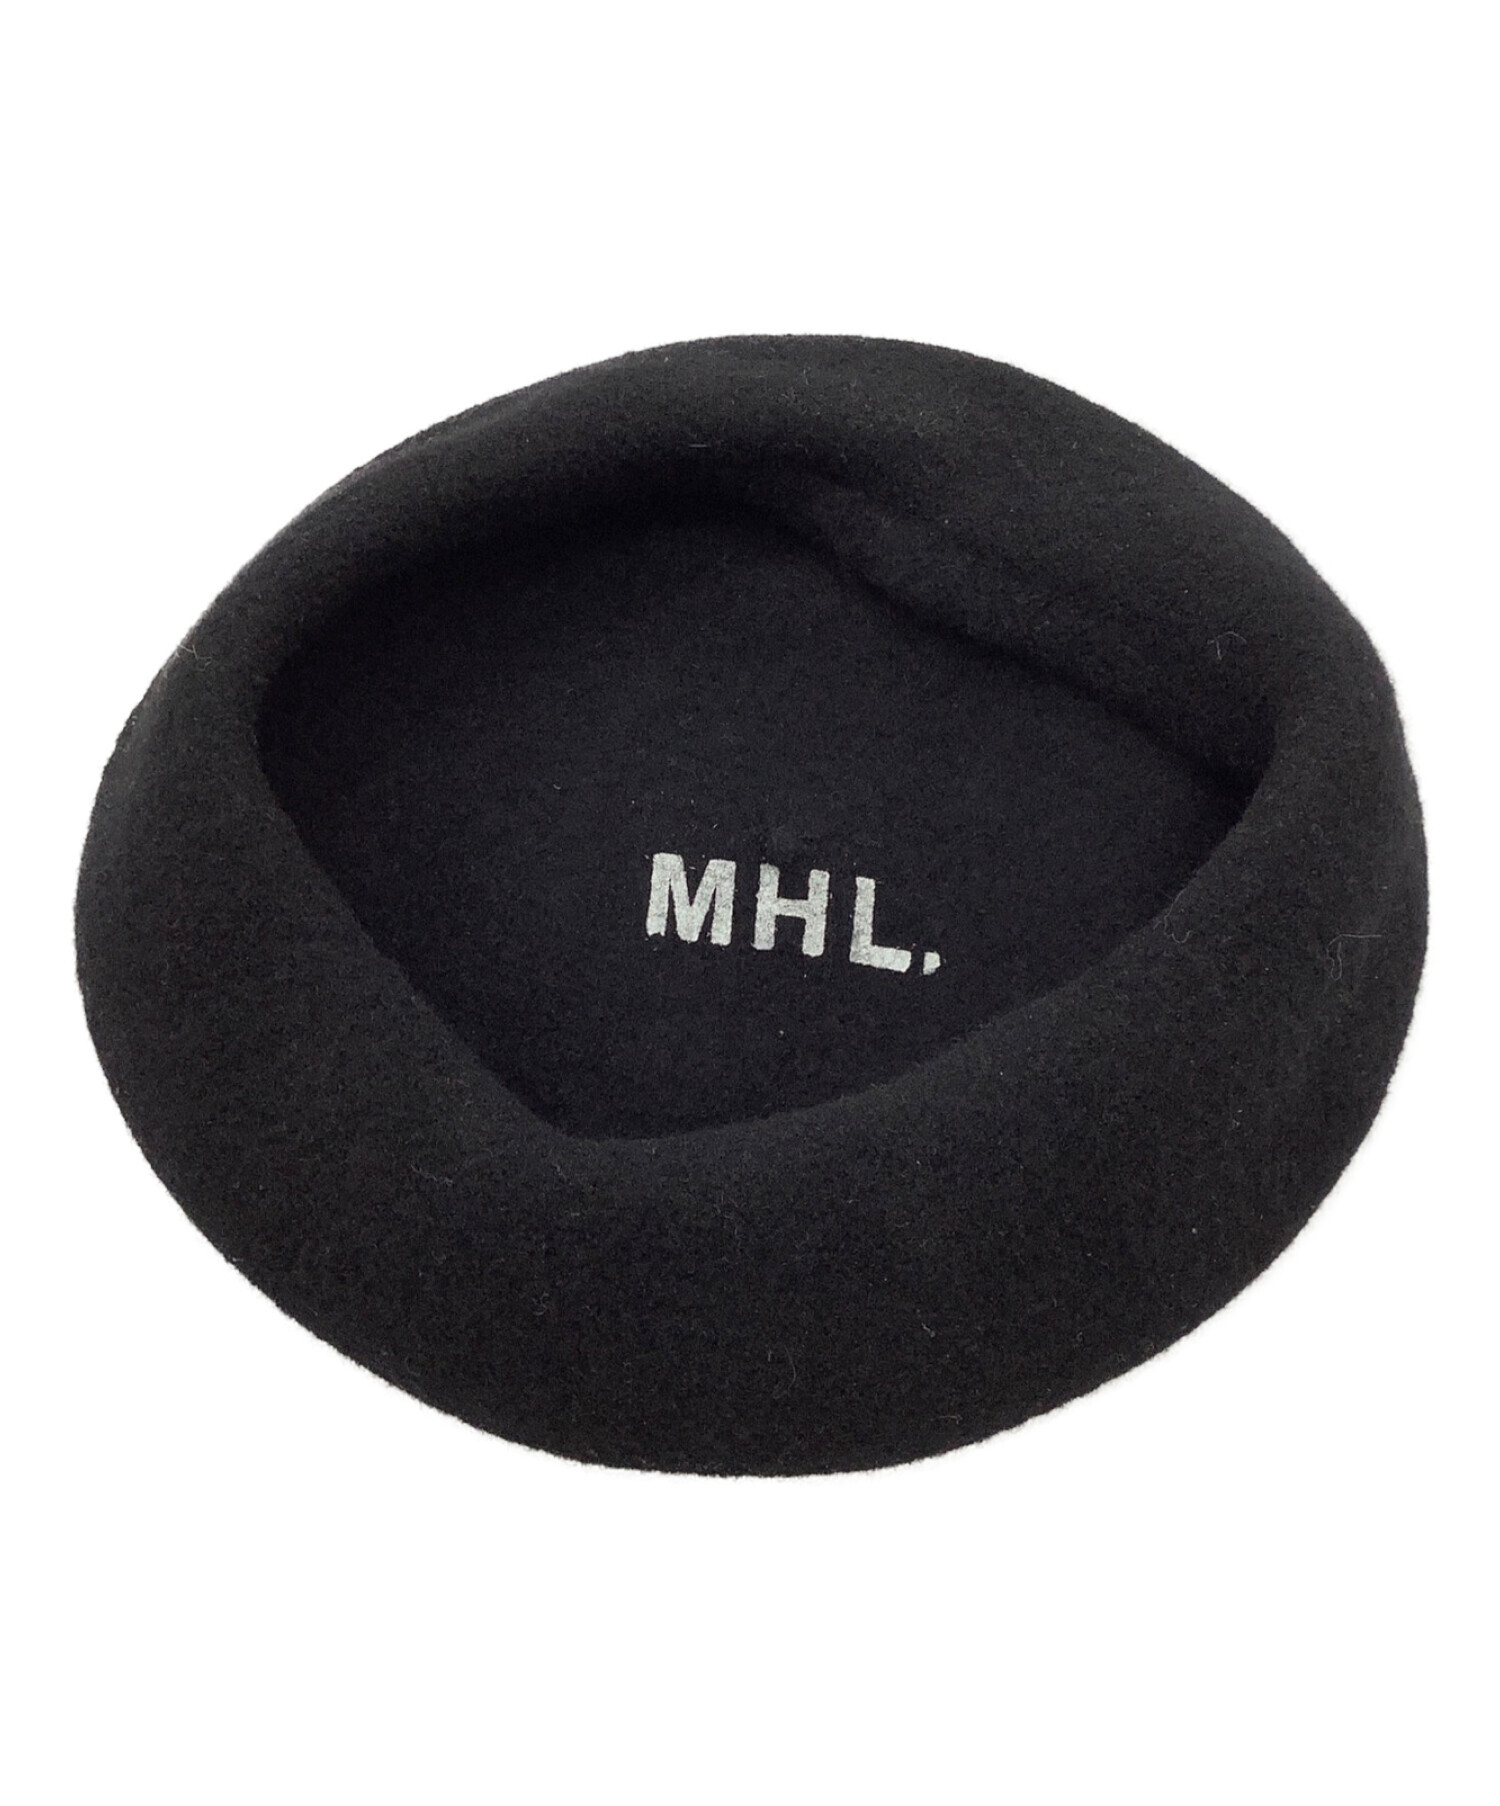 変革のパワーを授ける・願望成就 MHL 帽子 ブラック - 通販 - www.srv2